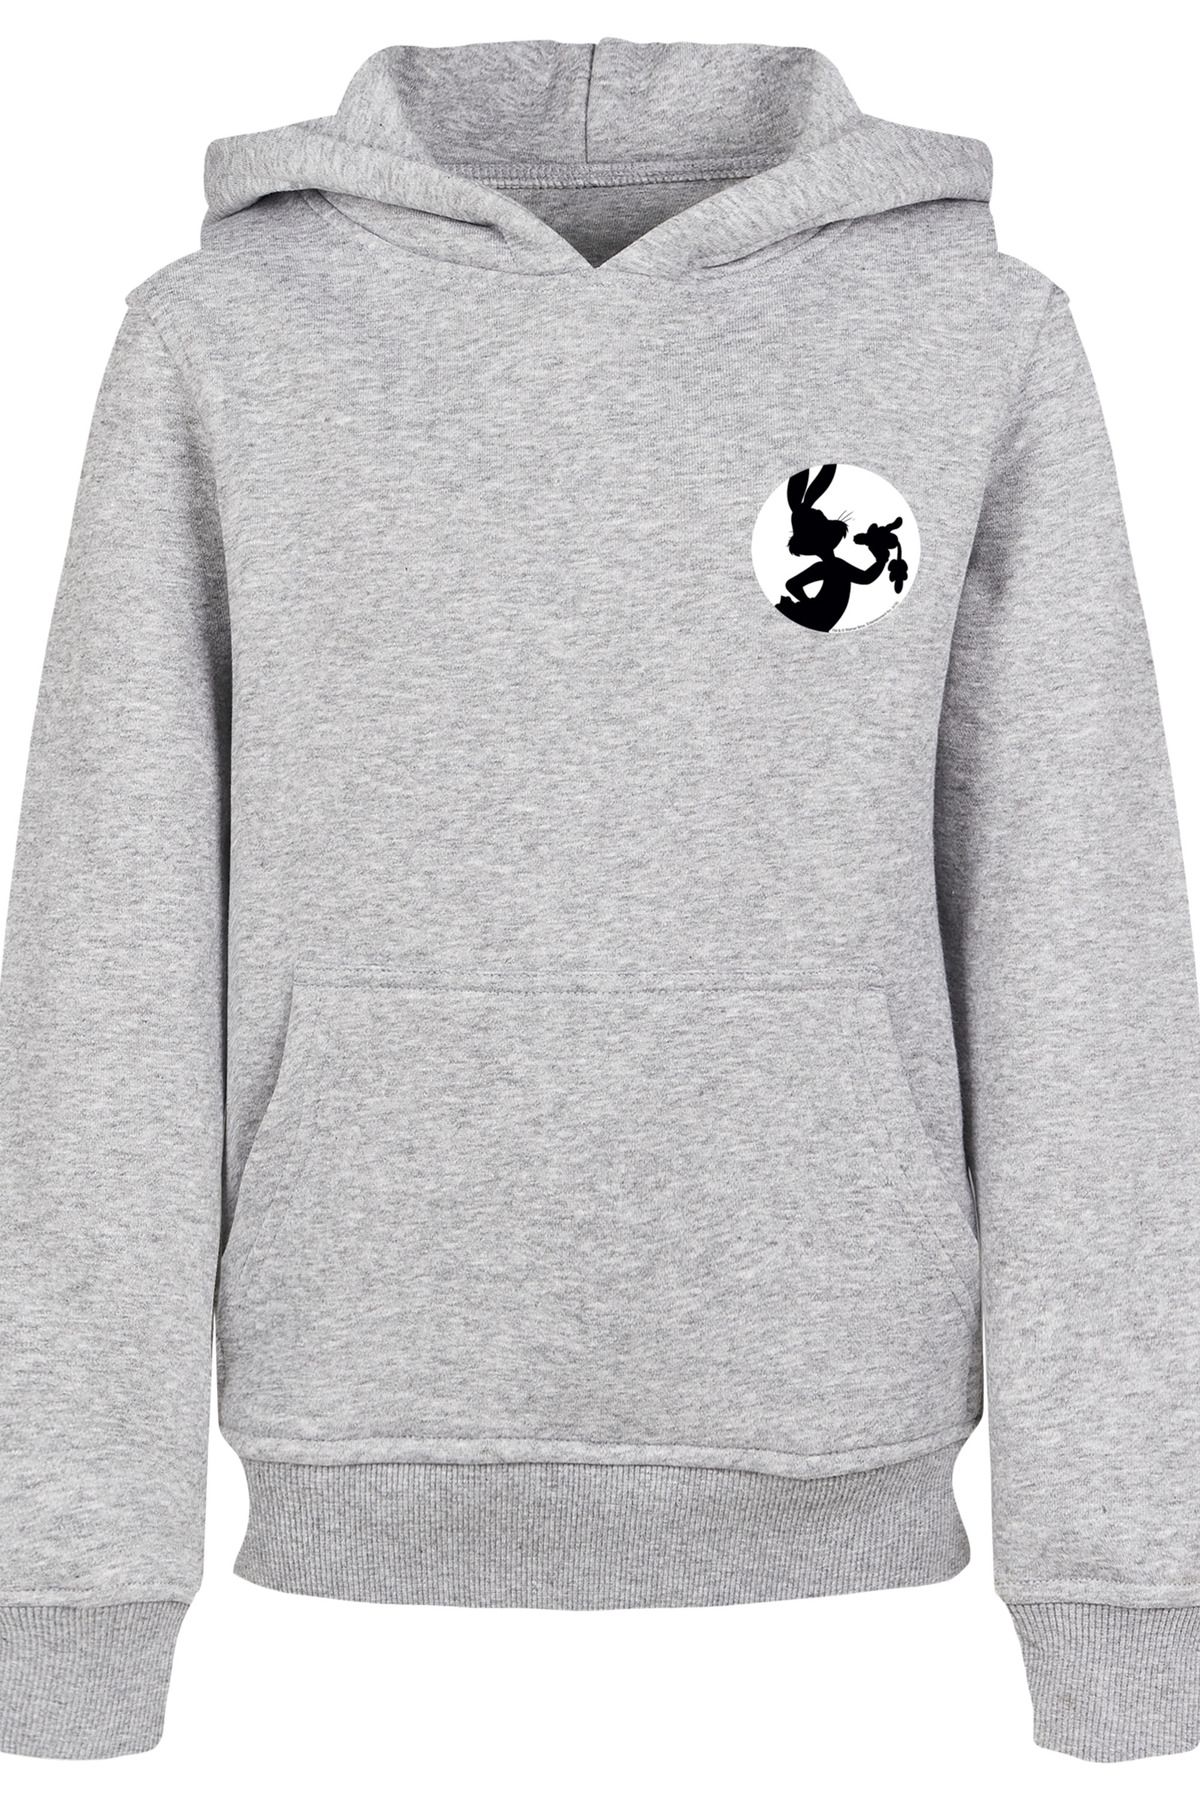 F4NT4STIC Sweatshirts für Kinder Online Kaufen - Trendyol